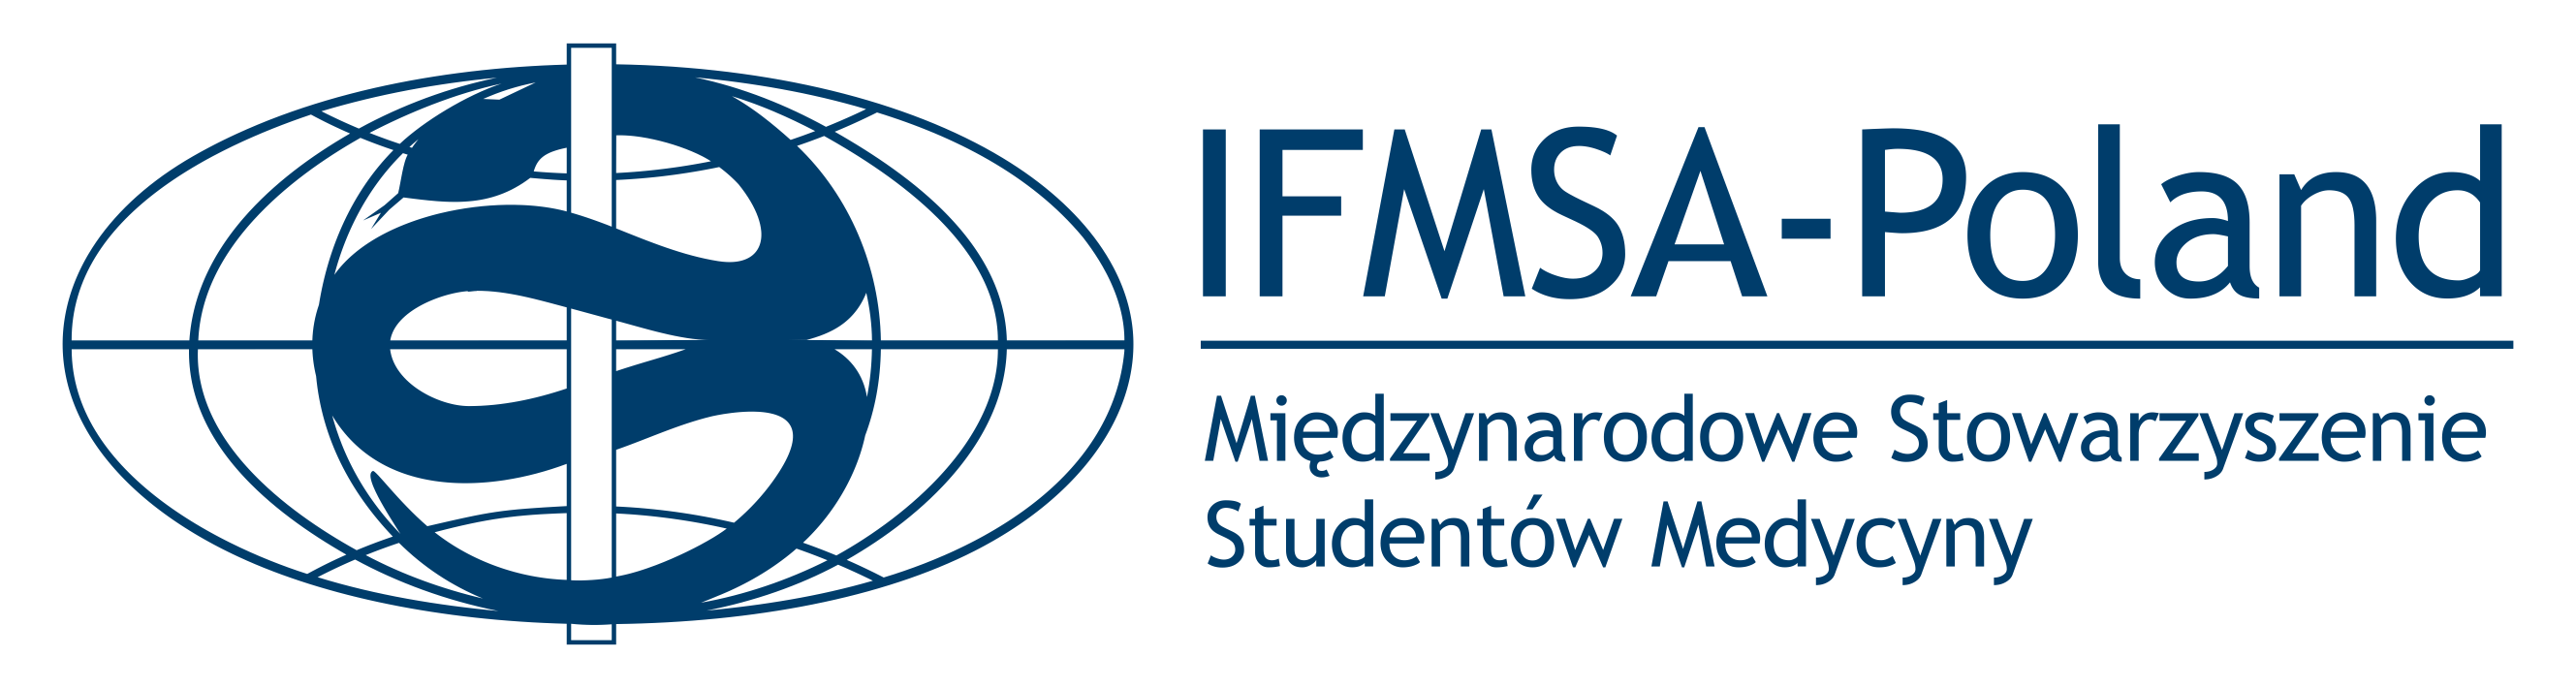 Logo IMFSA, Międzynarodowego Stowarzyszenia Studentów Medycyny